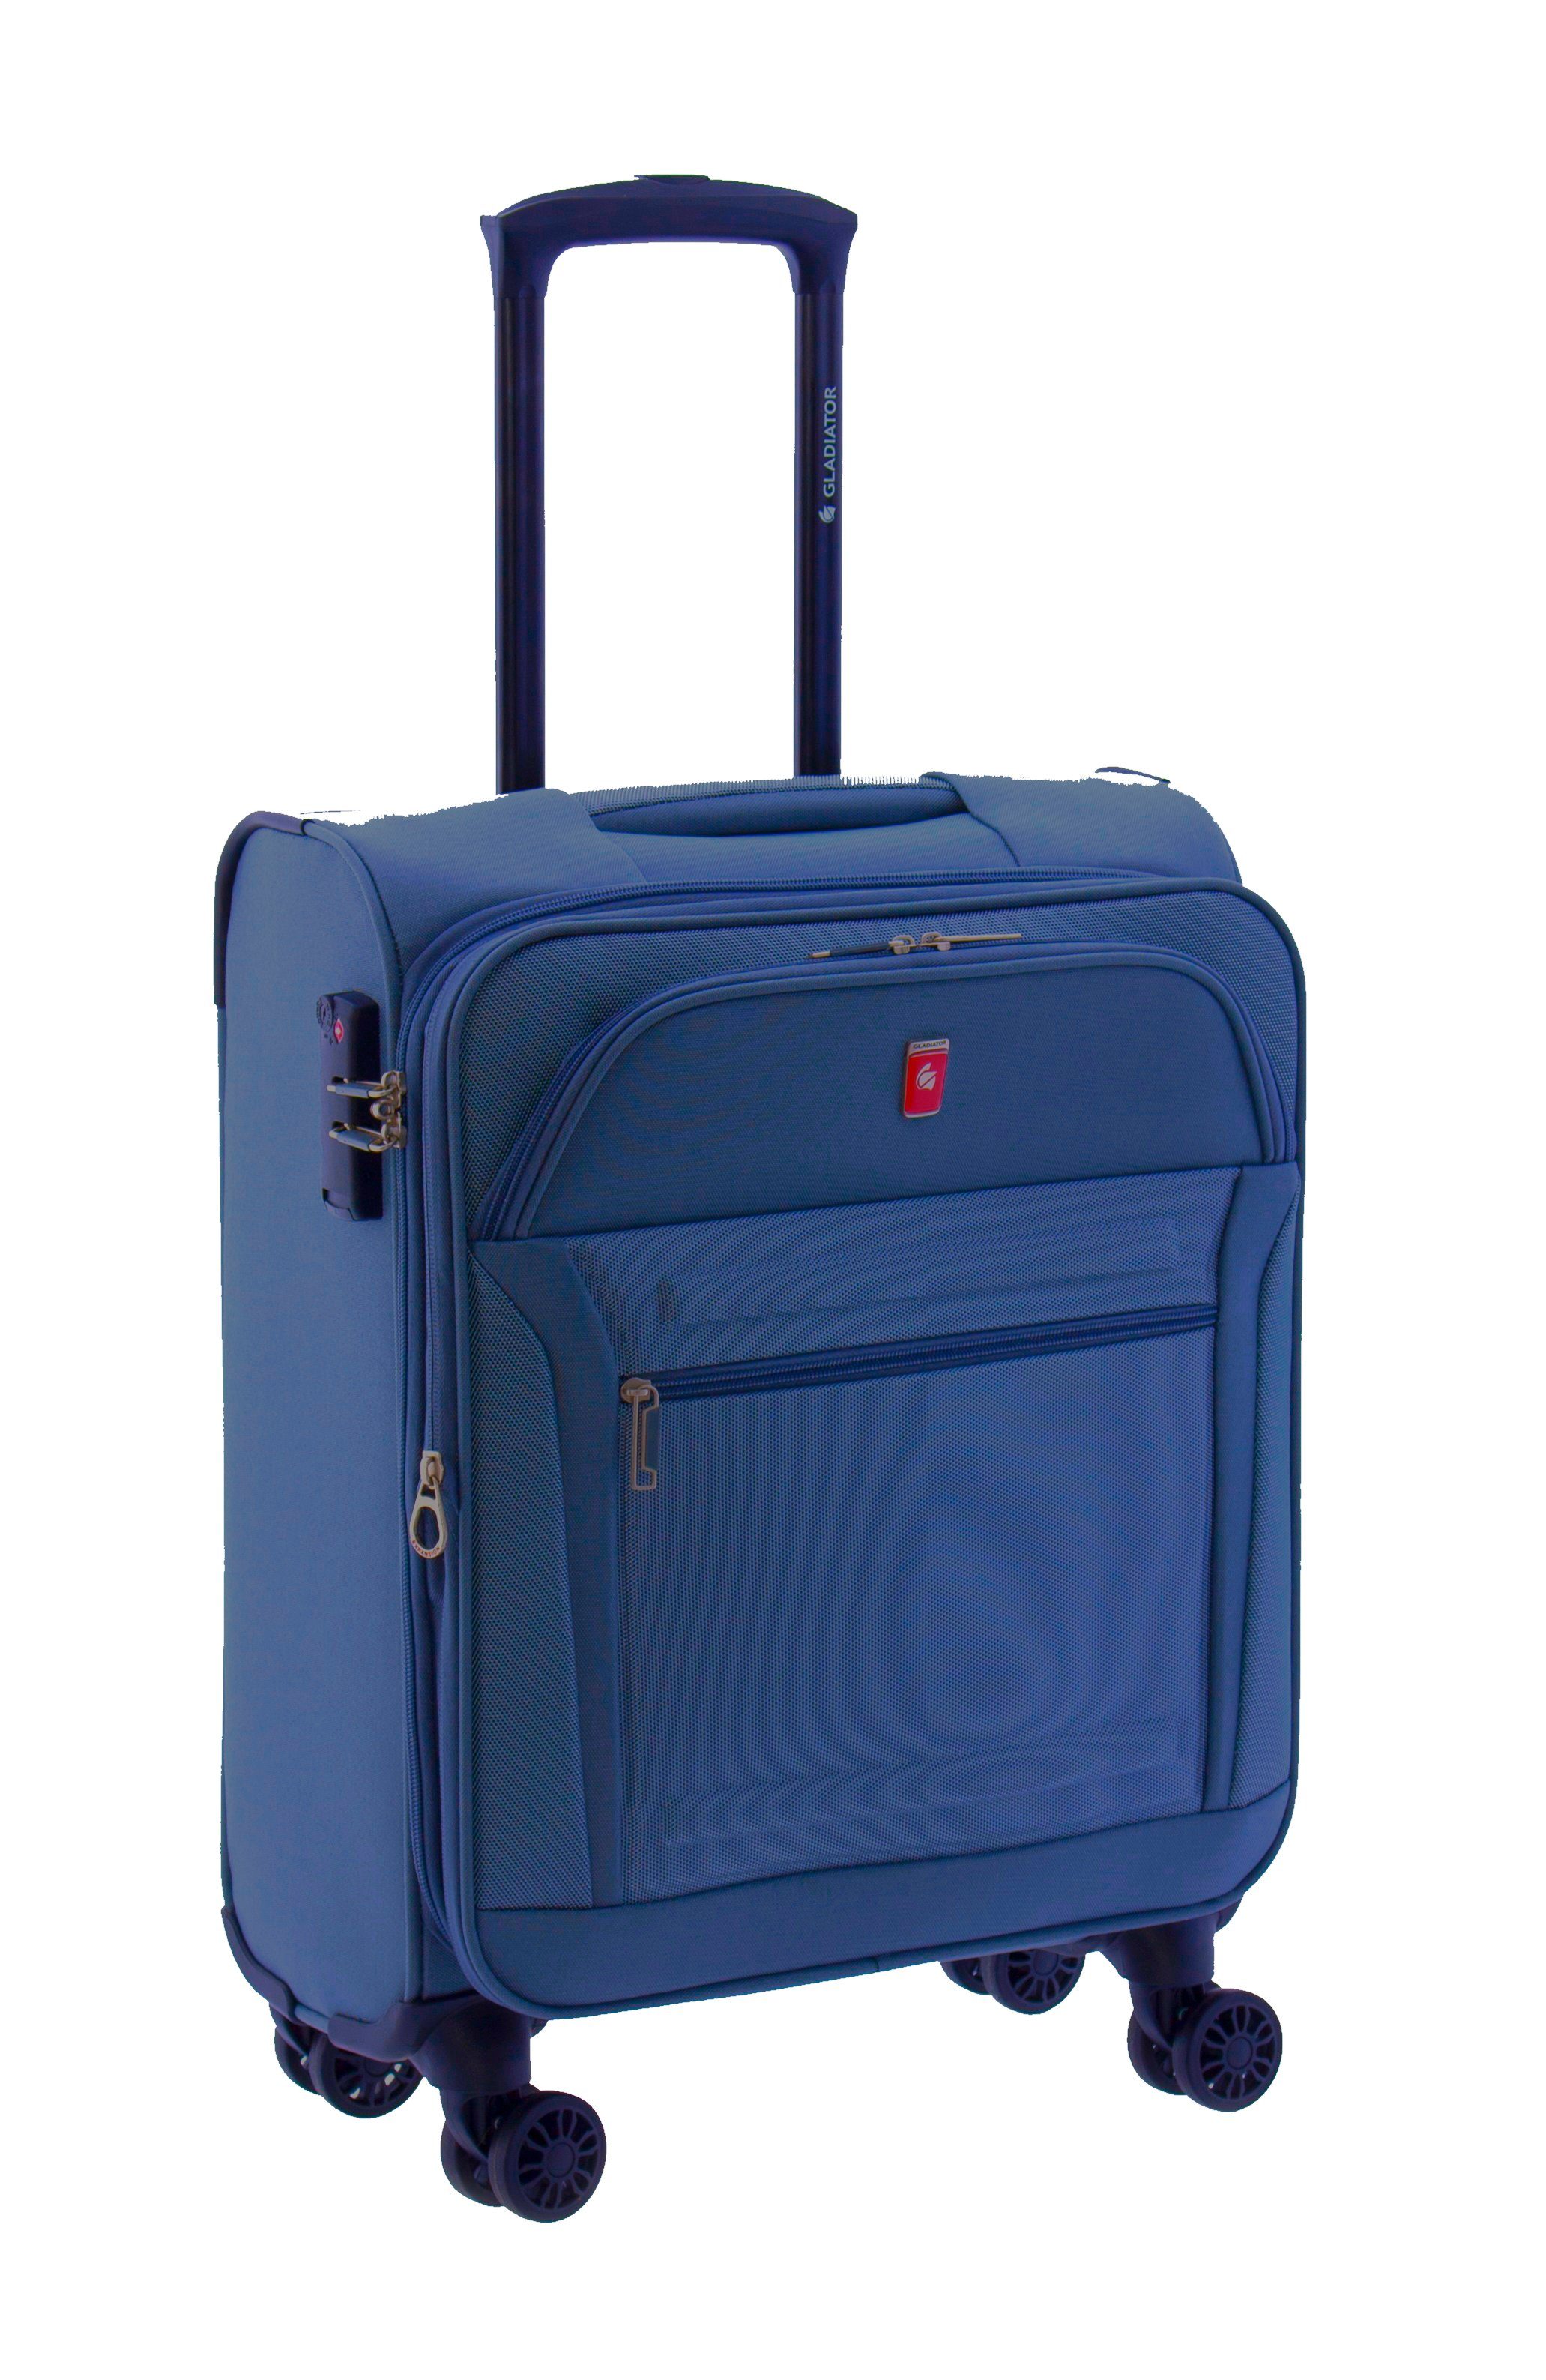 GLADIATOR Weichgepäck-Trolley Scirocco - 78, 68, 55cm - grau, brau, blau, Dehnfalte, TSA